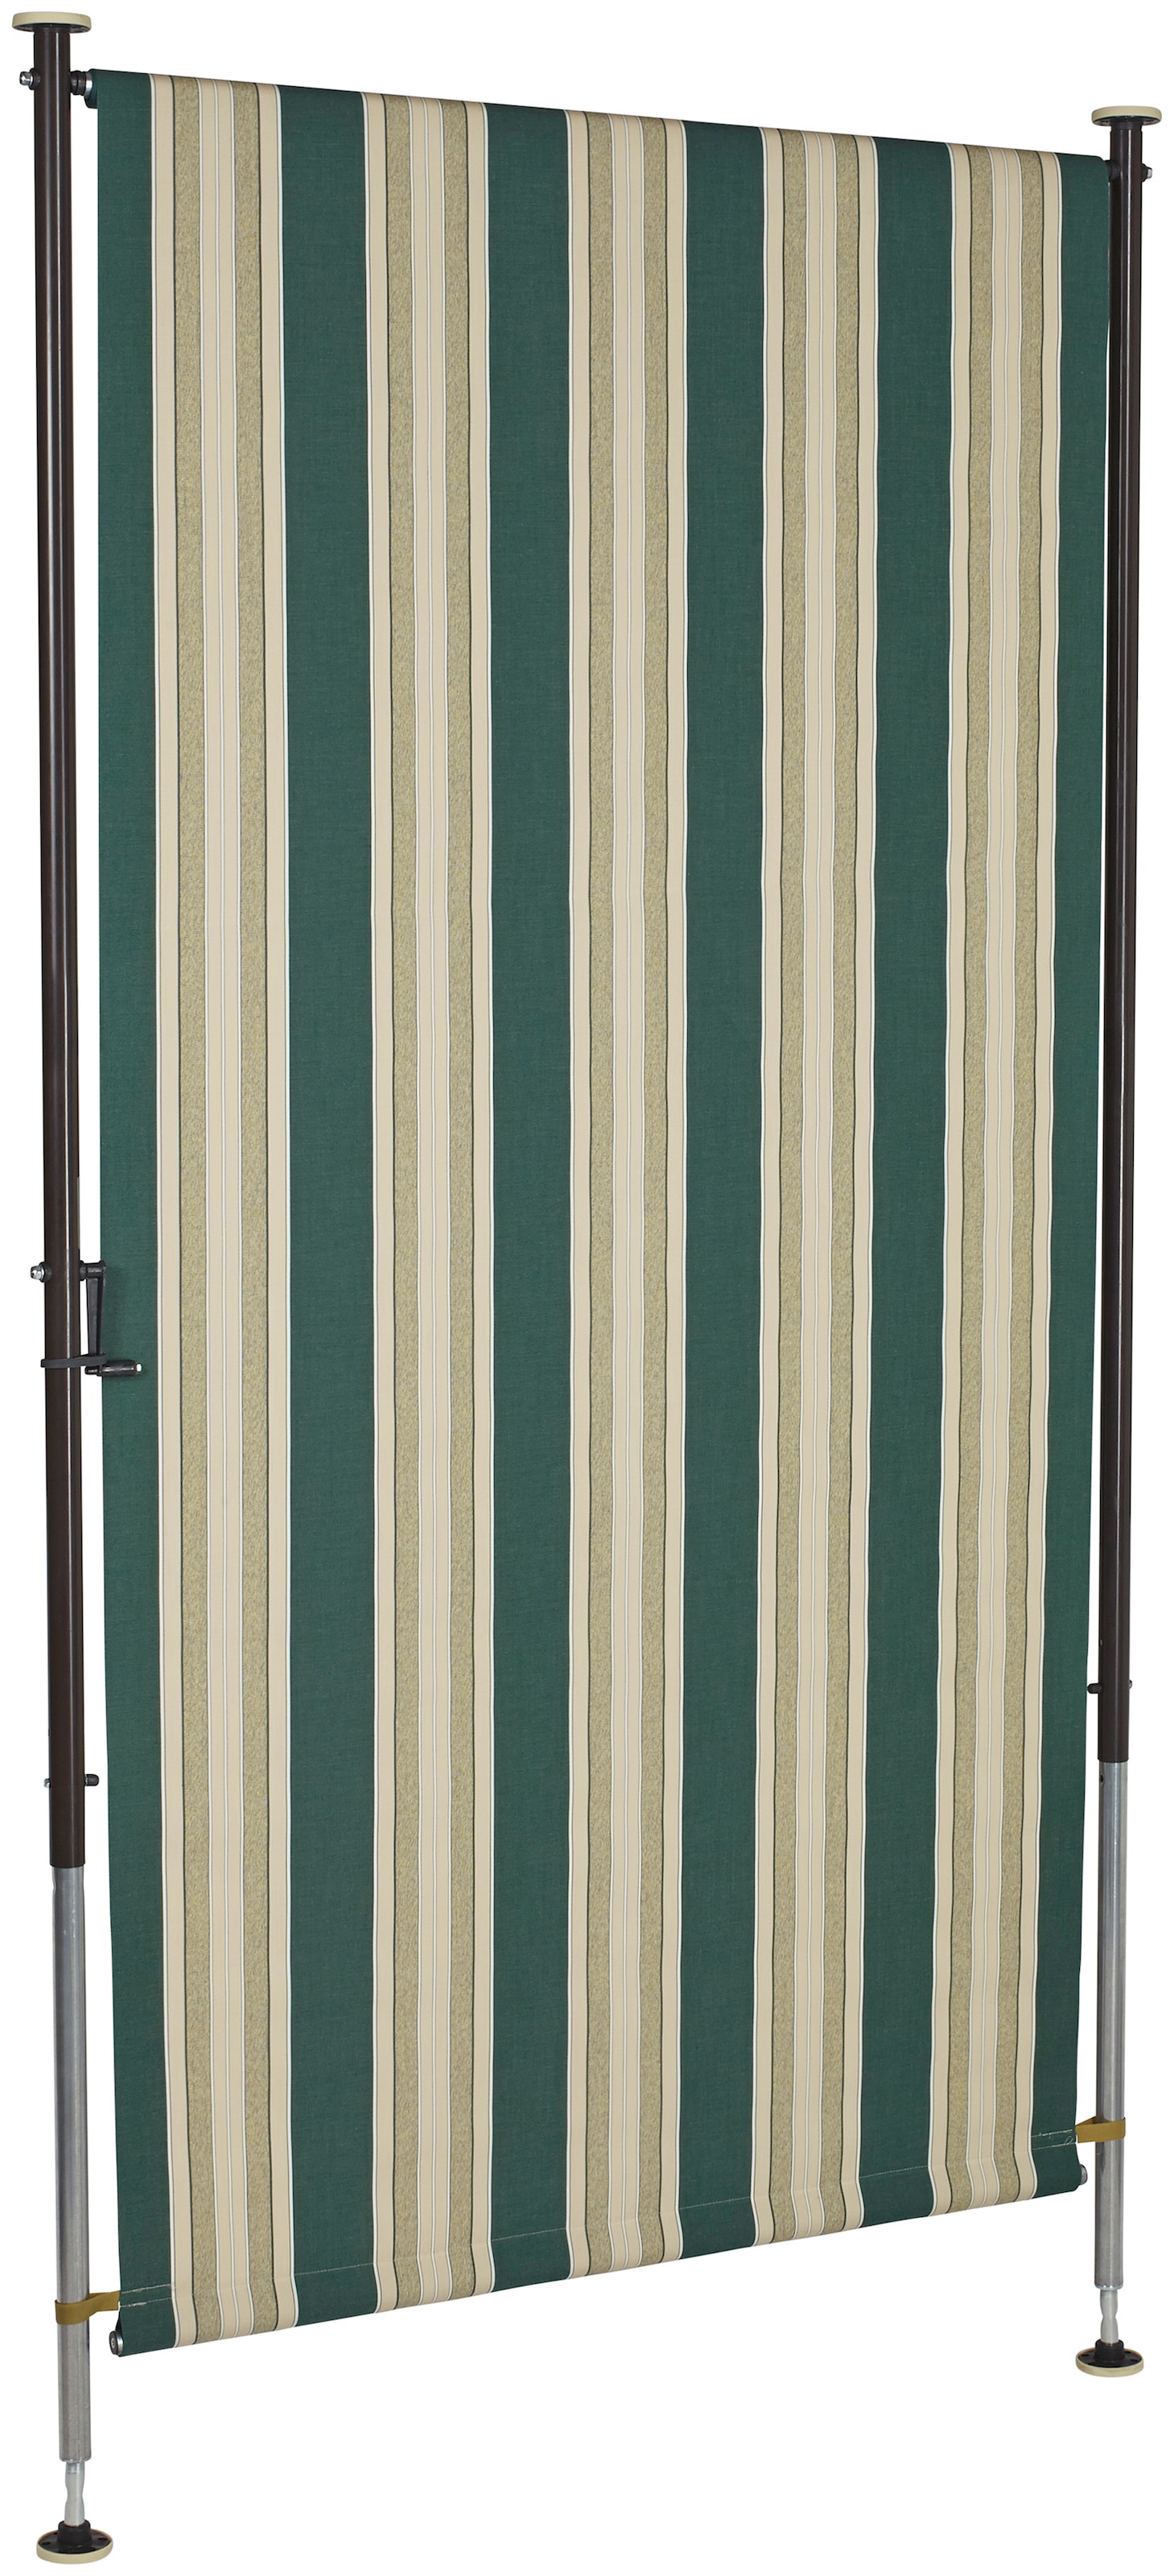 Angerer Freizeitmöbel Klemm-Senkrechtmarkise »Nr. 8700«, grün/beige, BxH: 150x275 cm